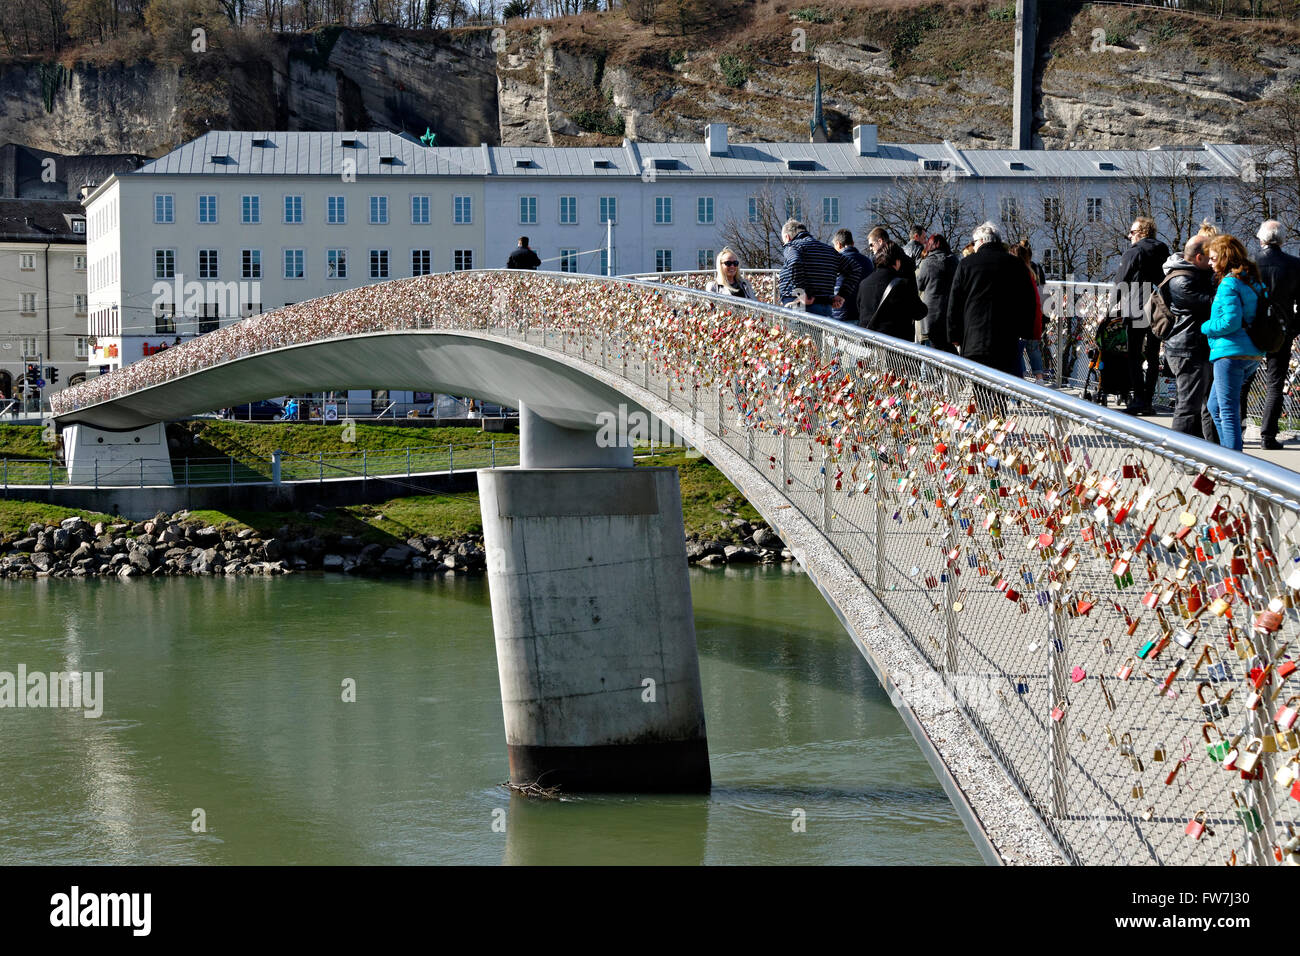 L'amour des verrous sur Makartsteg bridge, Salzbourg, Autriche, Europe Banque D'Images